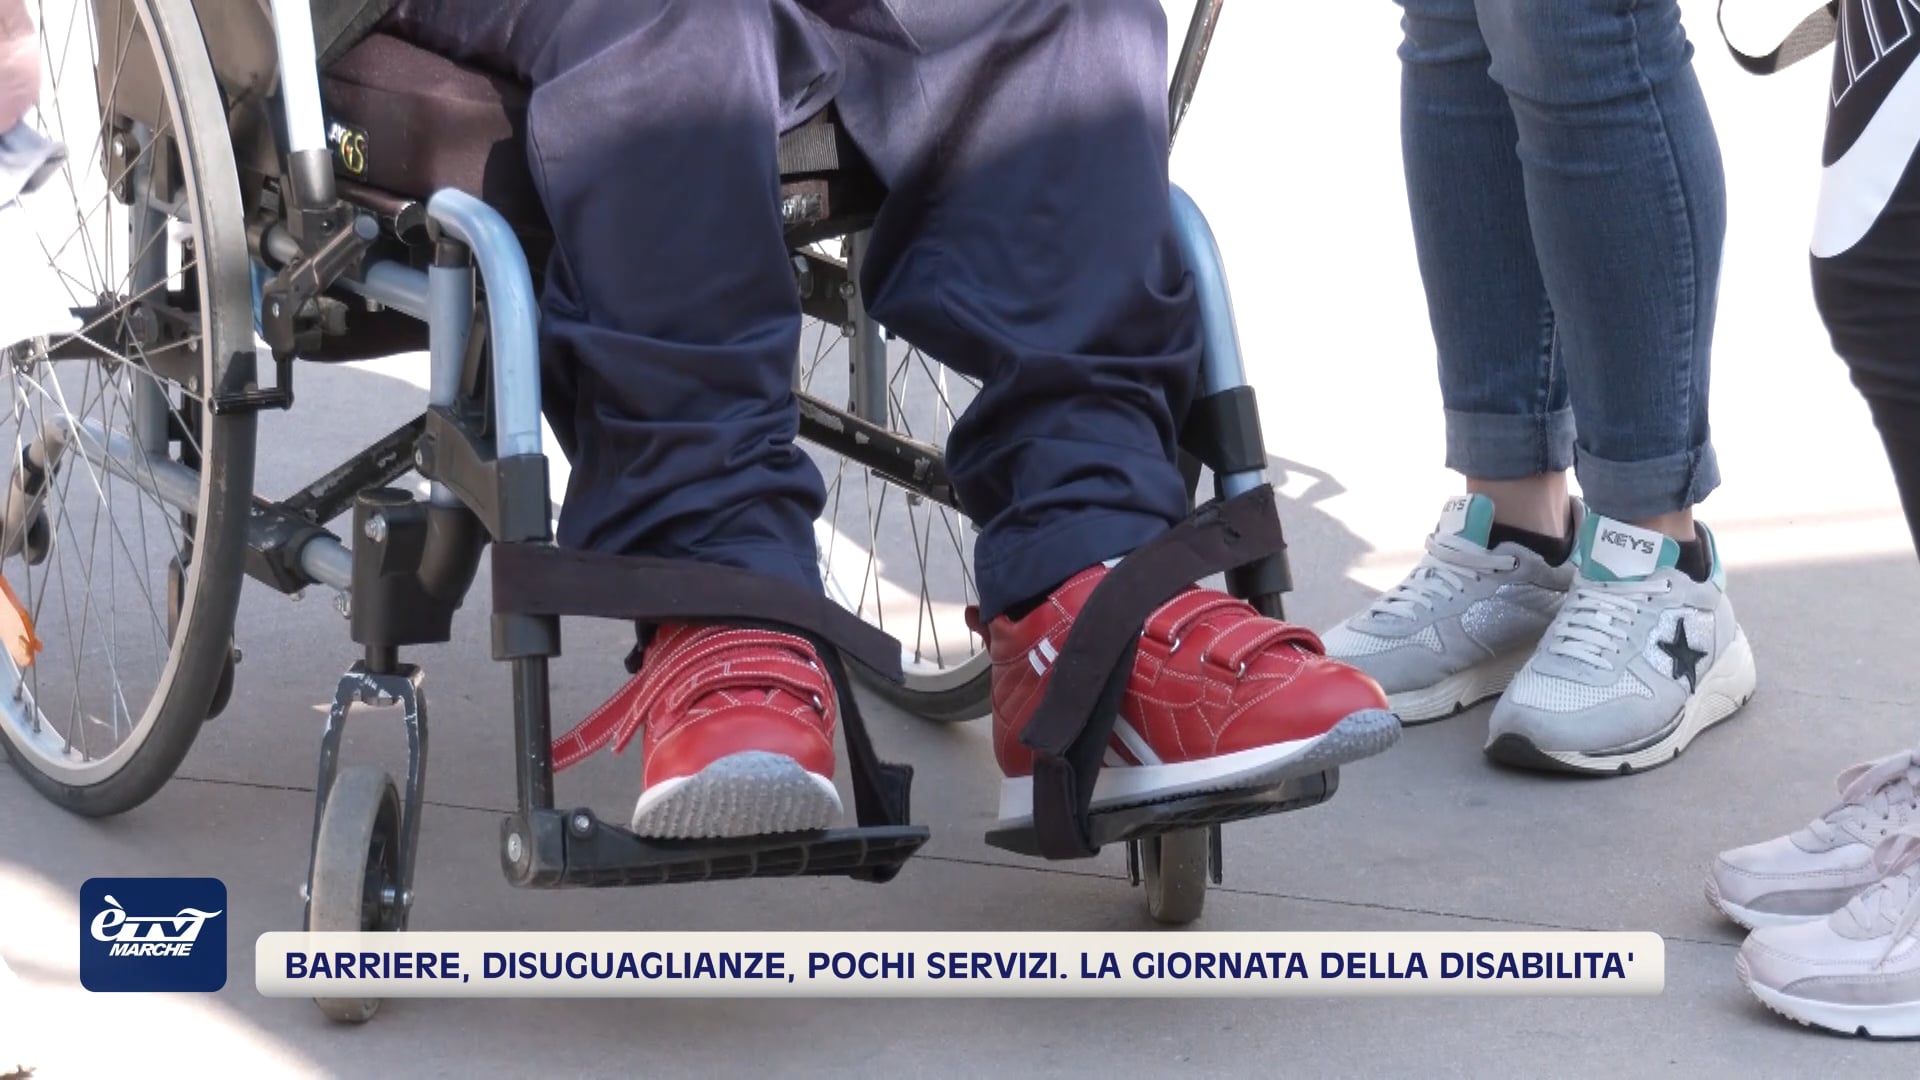 Barriere, disuguaglianze, pochi servizi. La Giornata della disabilità - VIDEO